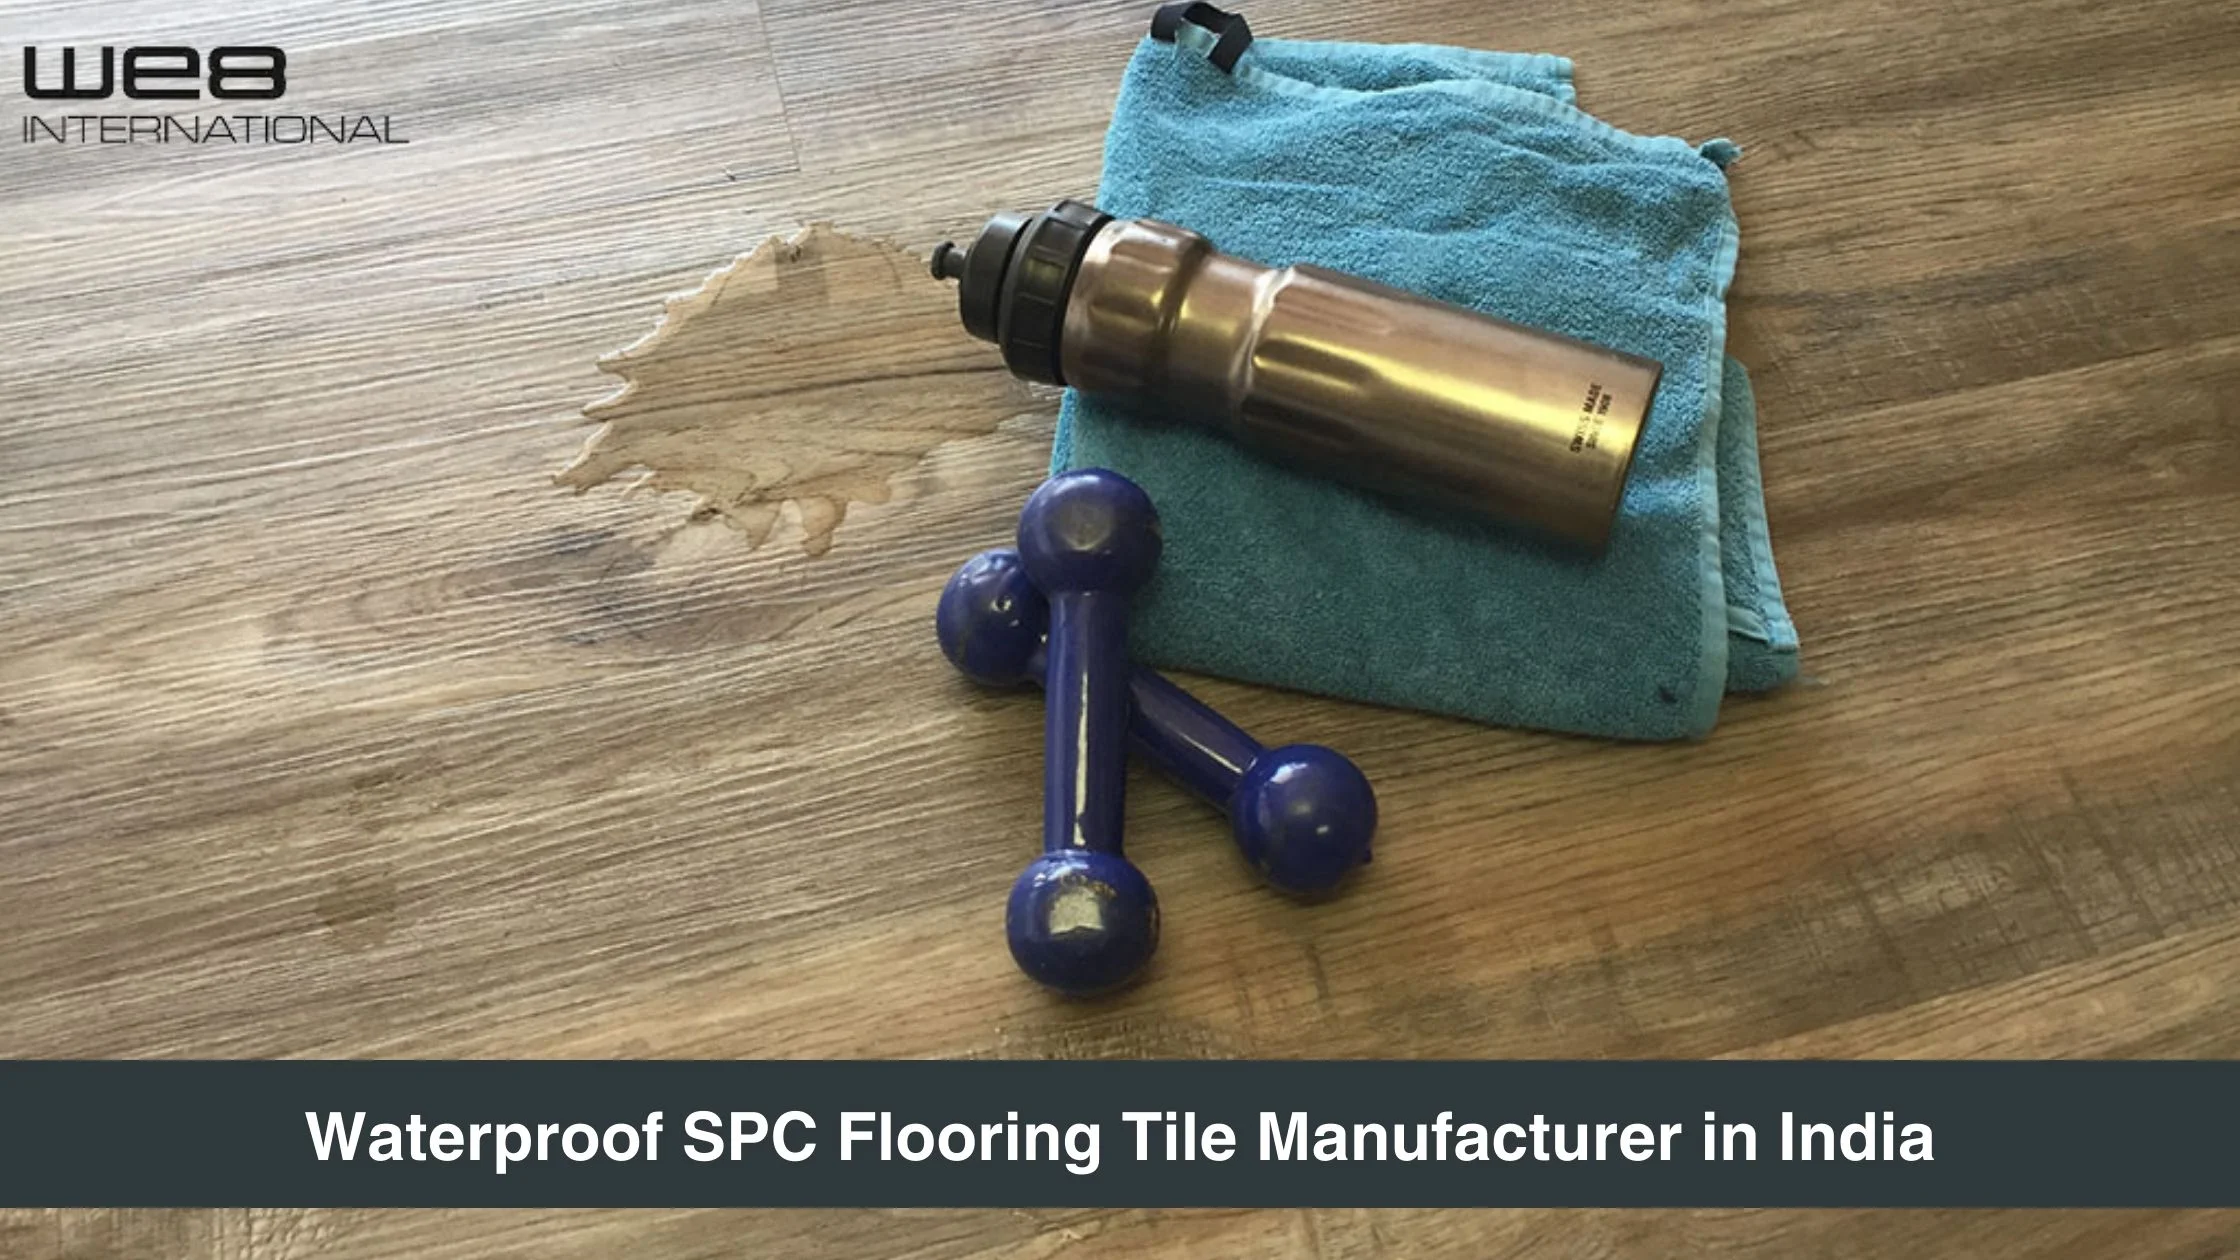 Waterproof SPC Flooring Tile Manufacturer in India